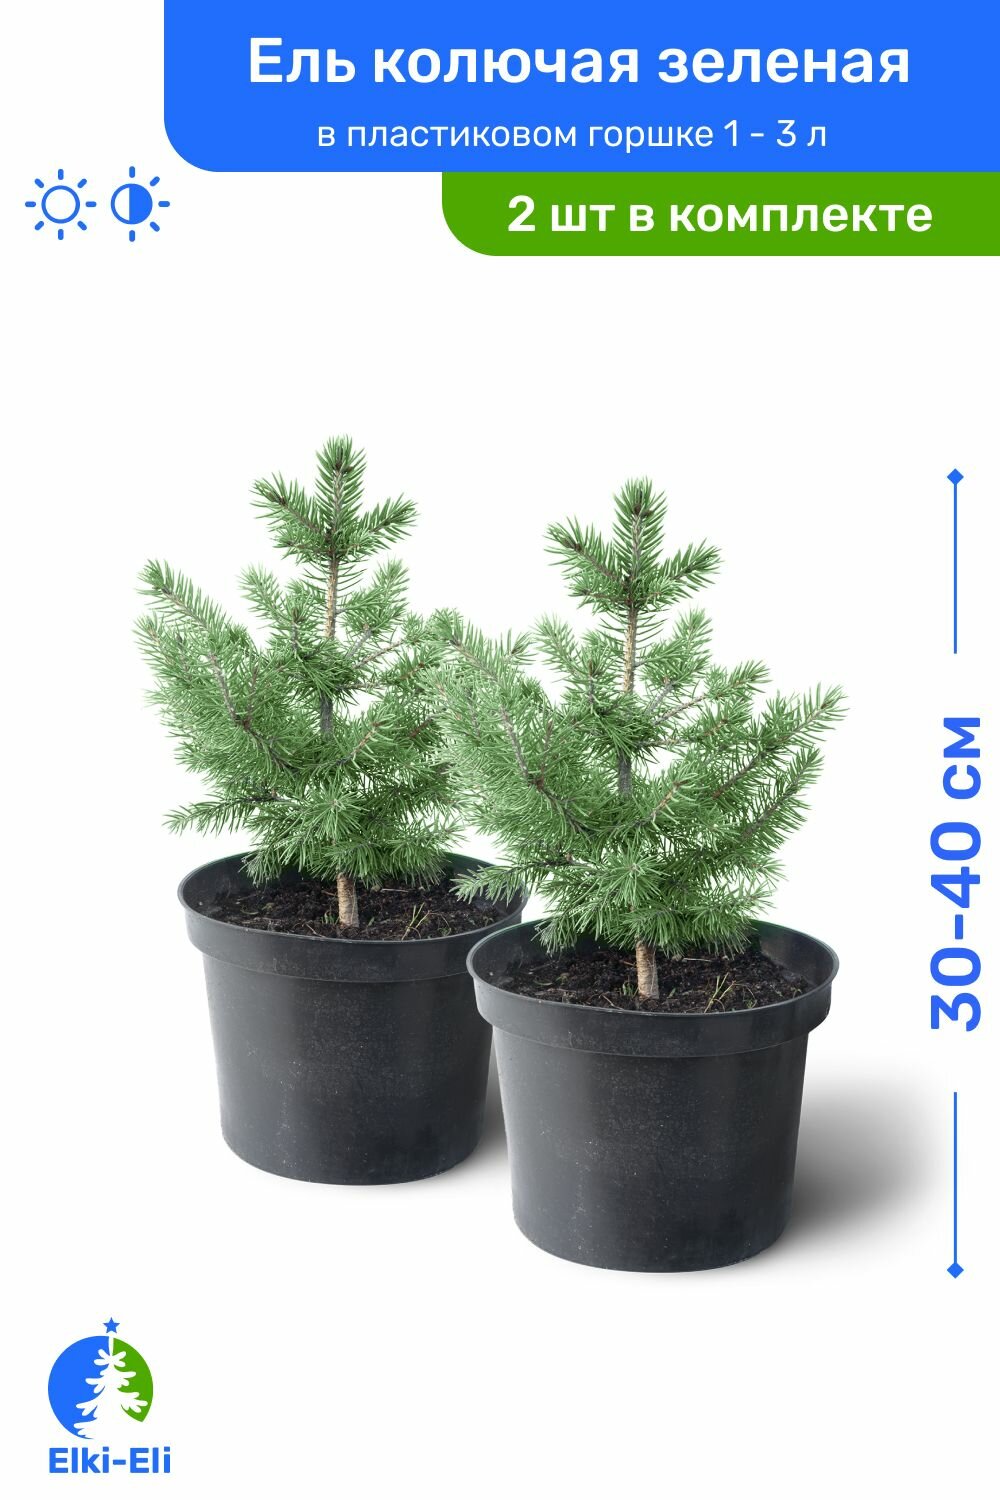 Ель колючая зелёная 30-40 см в пластиковом горшке 1-3 л саженец хвойное живое растение комплект из 2 шт